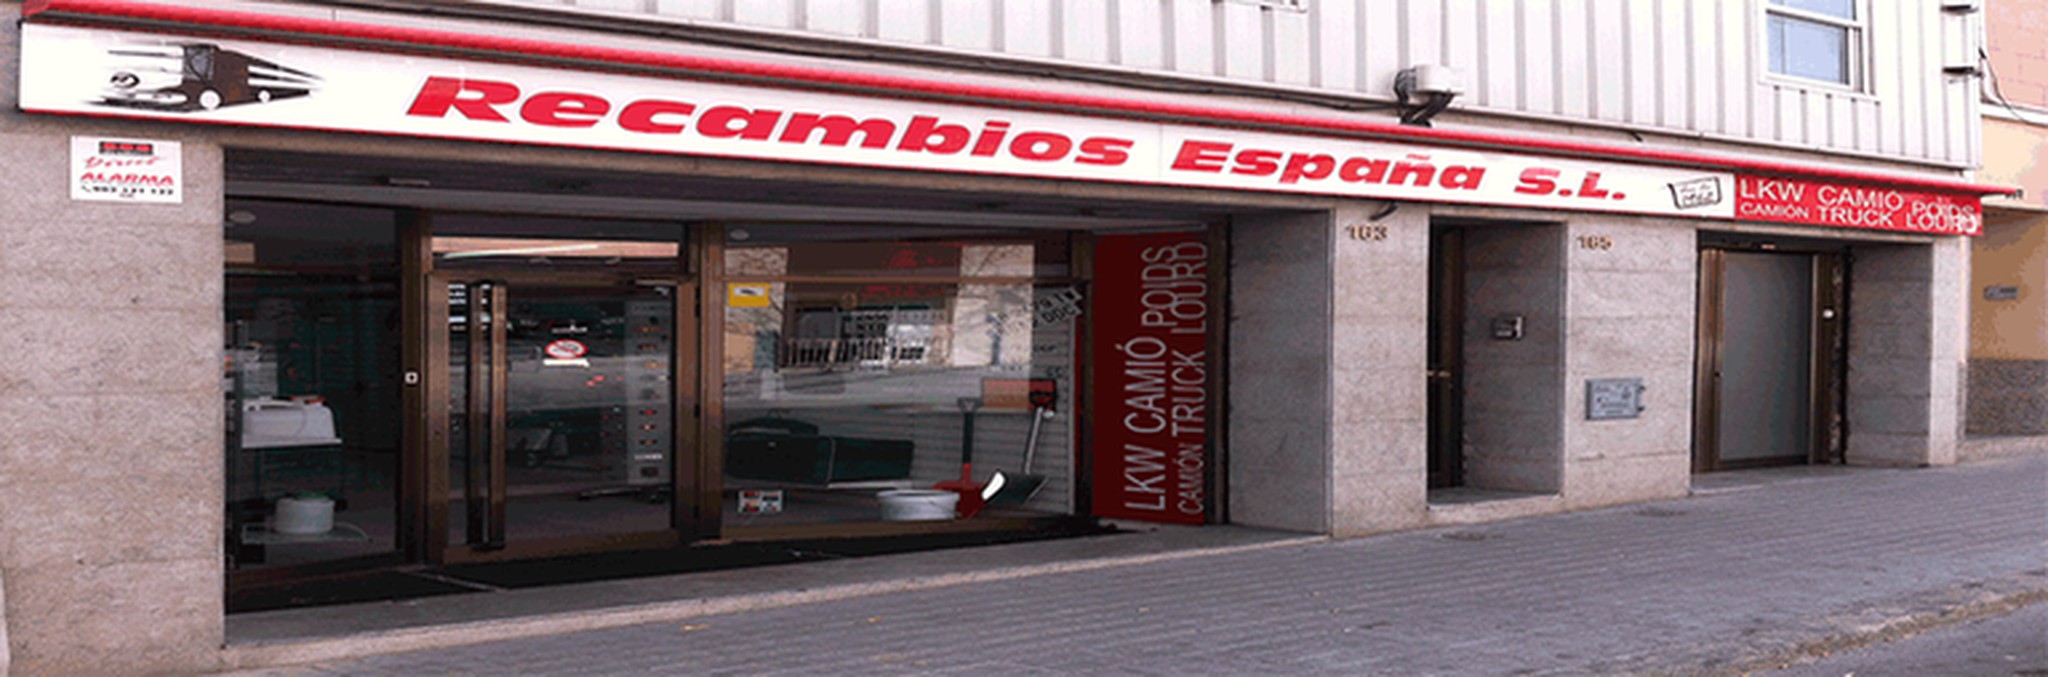 Exterior de la tienda en Sabadell Barcelona